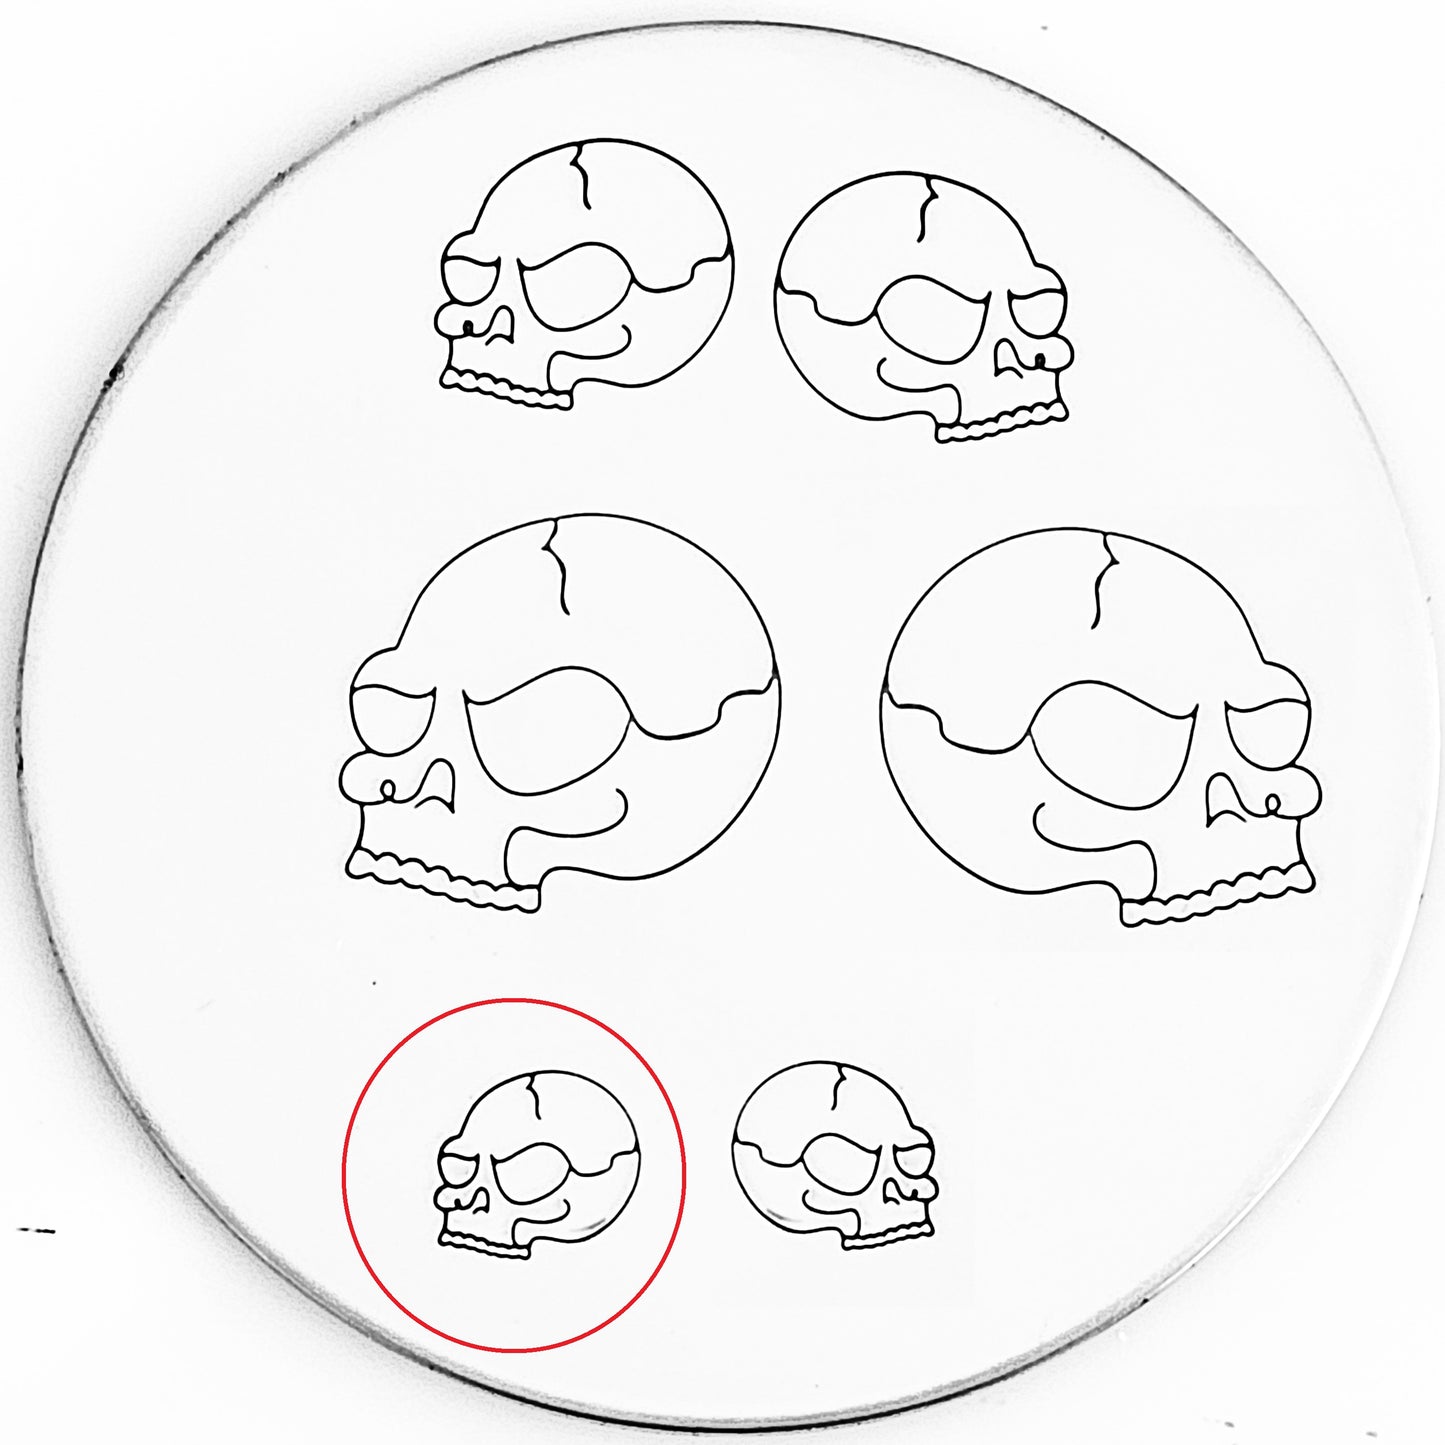 Cartoon Skull